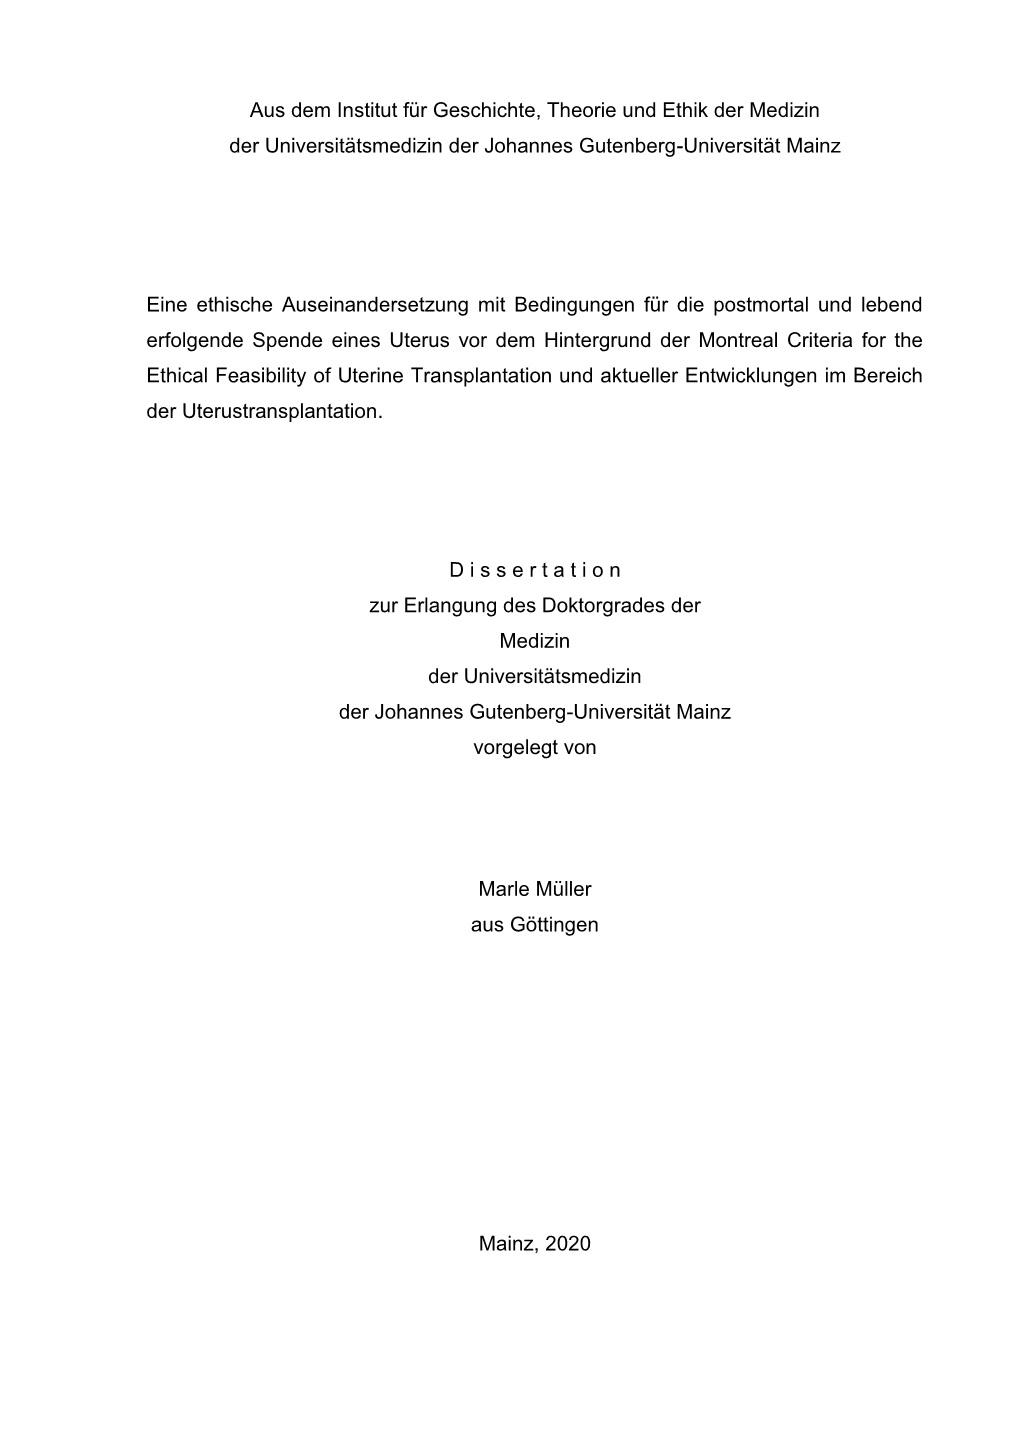 Aus Dem Institut Für Geschichte, Theorie Und Ethik Der Medizin Der Universitätsmedizin Der Johannes Gutenberg-Universität Mainz